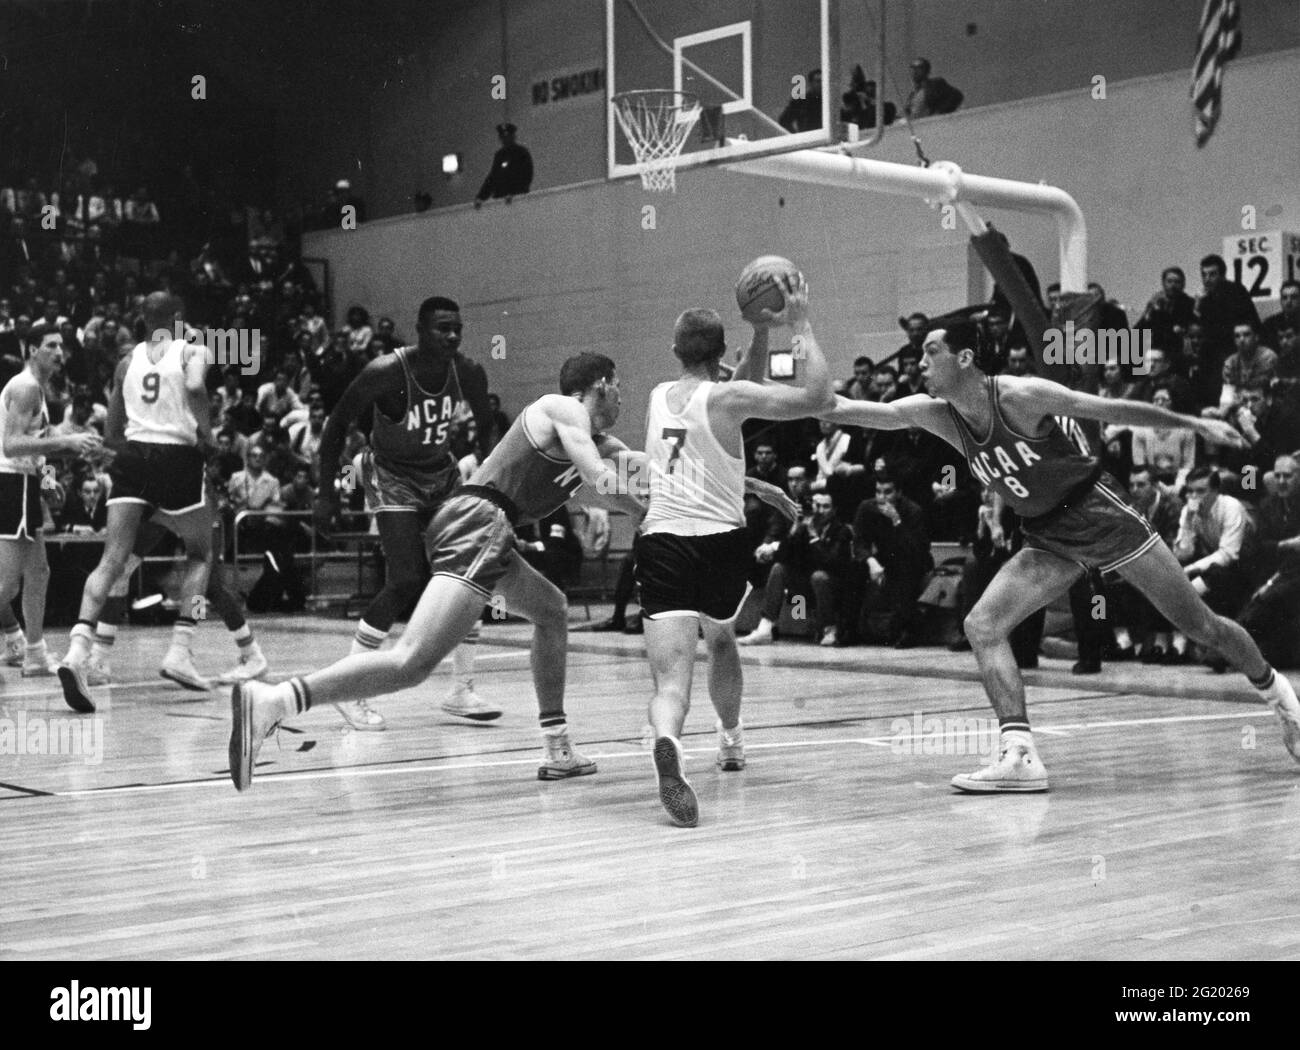 Bill Bradley von der Princeton University (#8 für das NCAA 'Red' Team), in Aktion während der Tryouts für das 1964 US Olympic Basketball Team, New York, NY, April 1964. (Foto von Riordan/United States Information Agency/RBM Vintage Images) Stockfoto